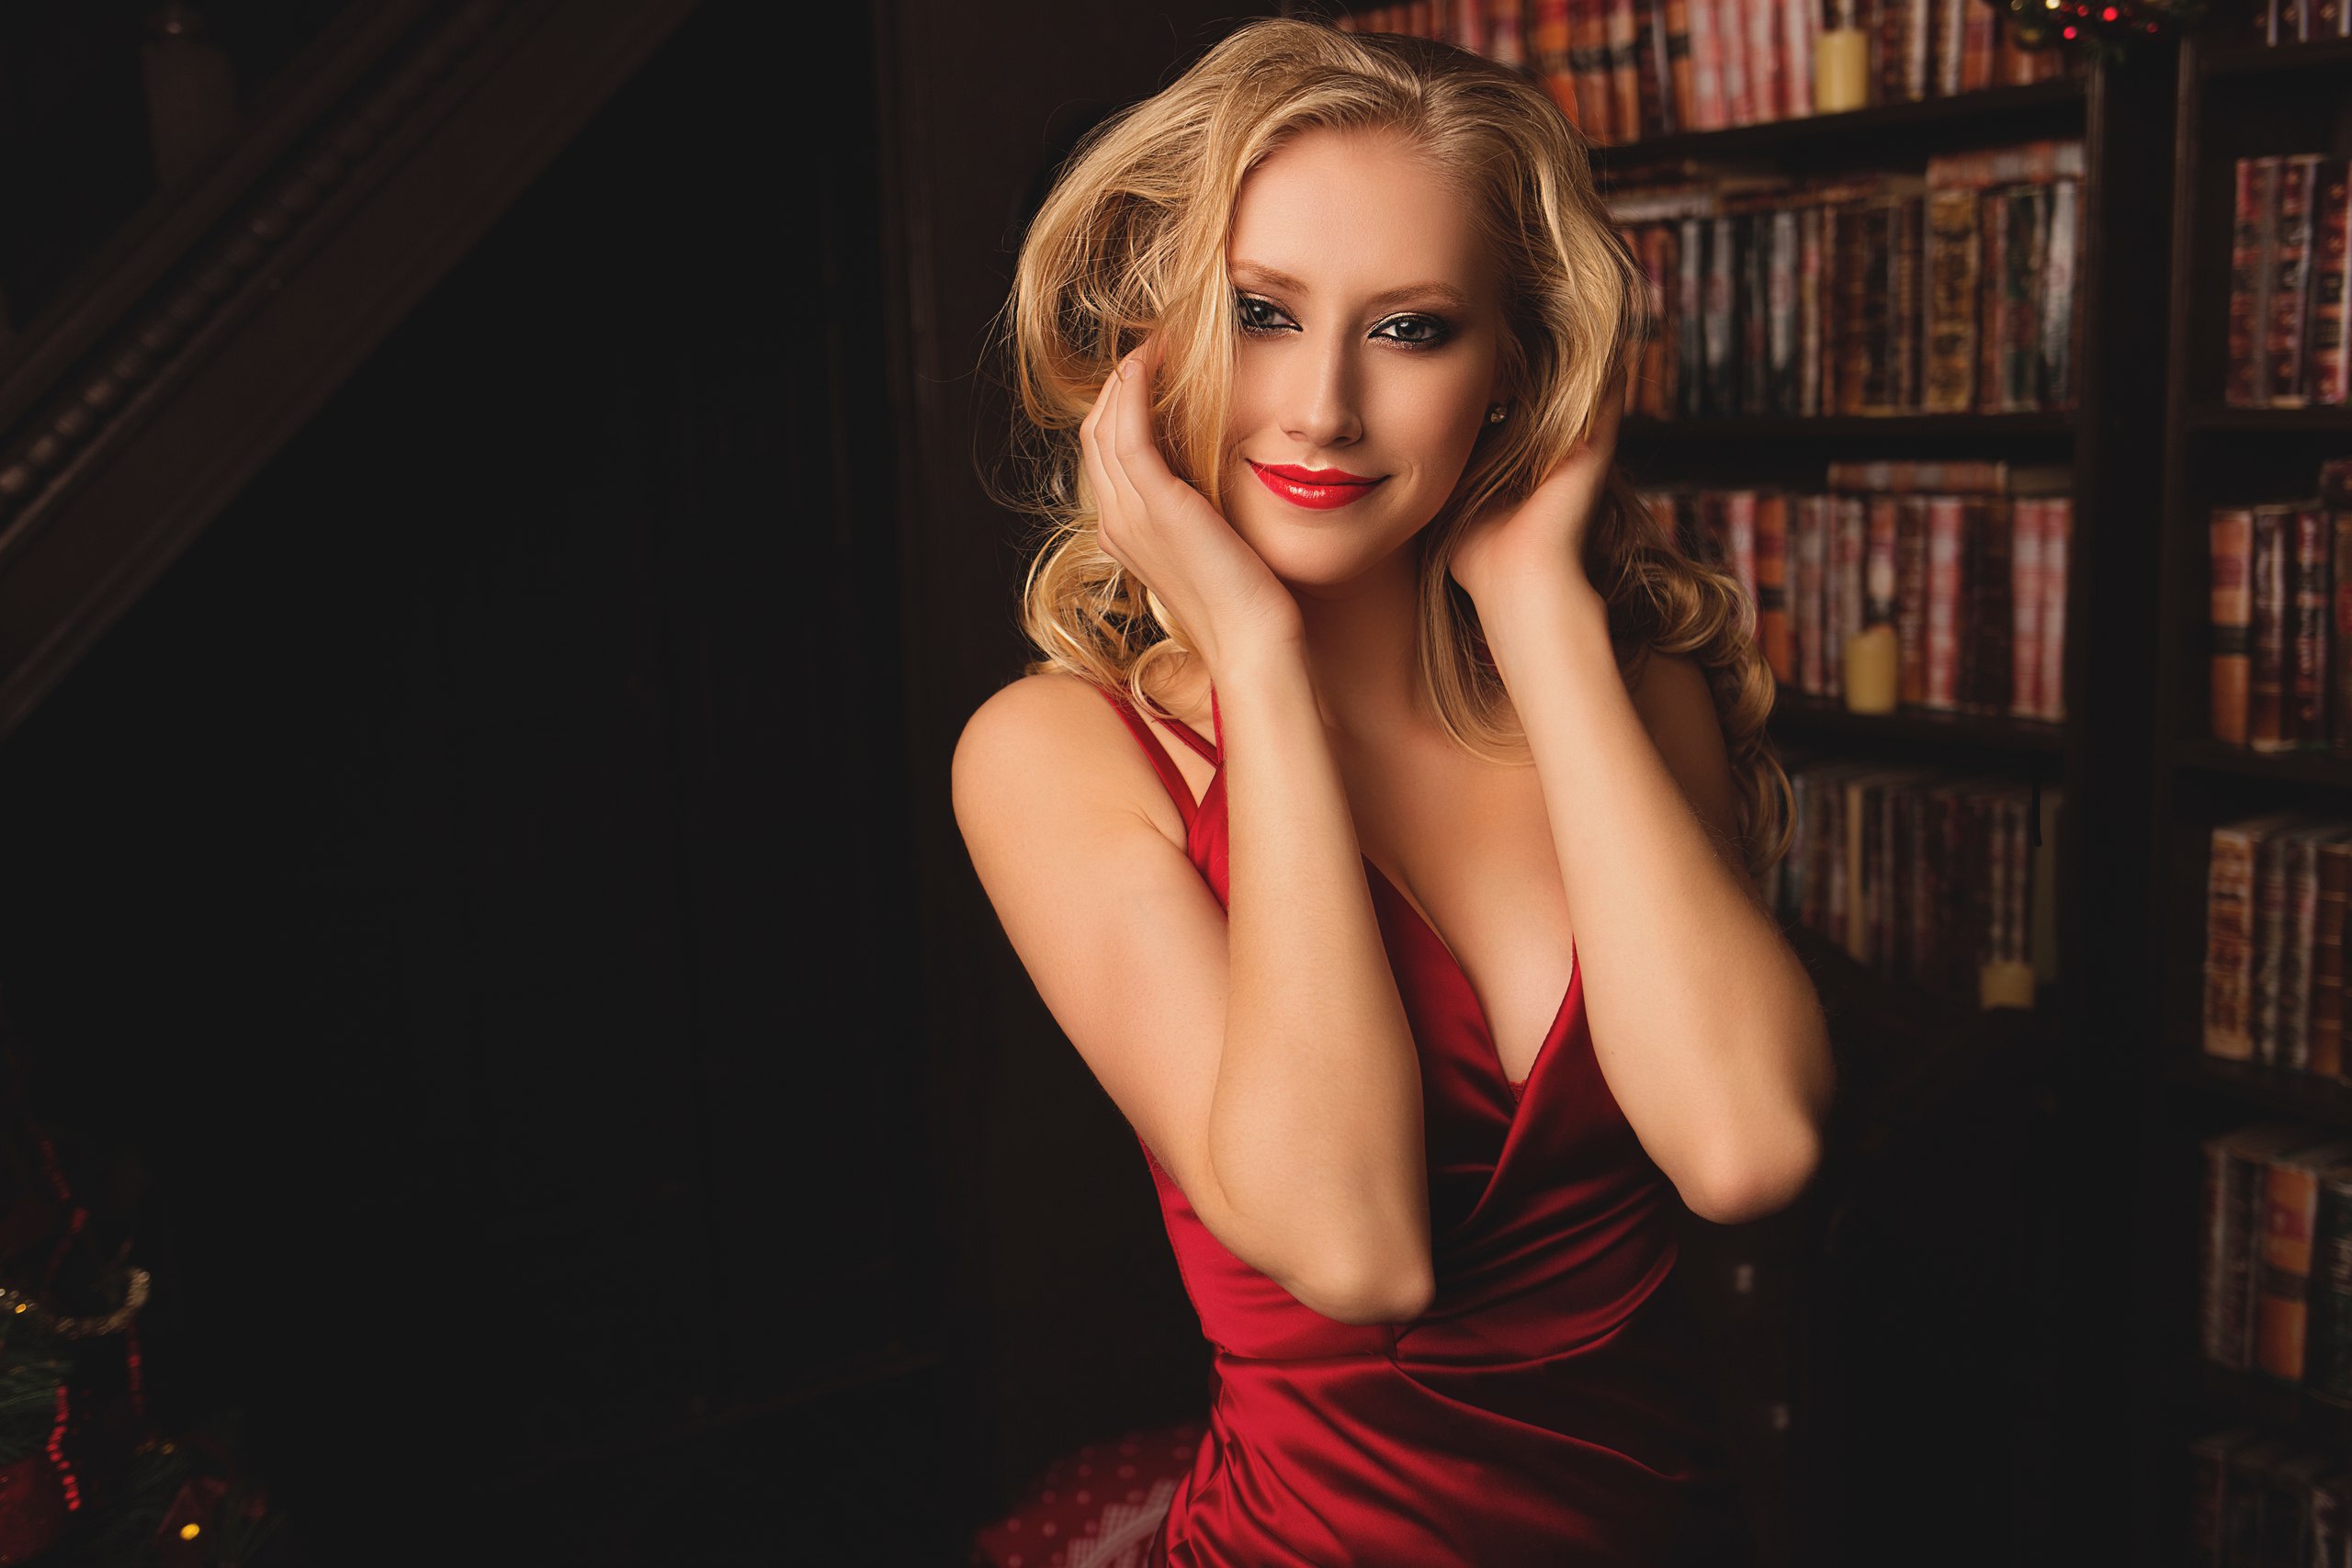 Blonde Smiling Women Indoors Model Red Dress Red Lipstick Bookshelves Books 2560x1707